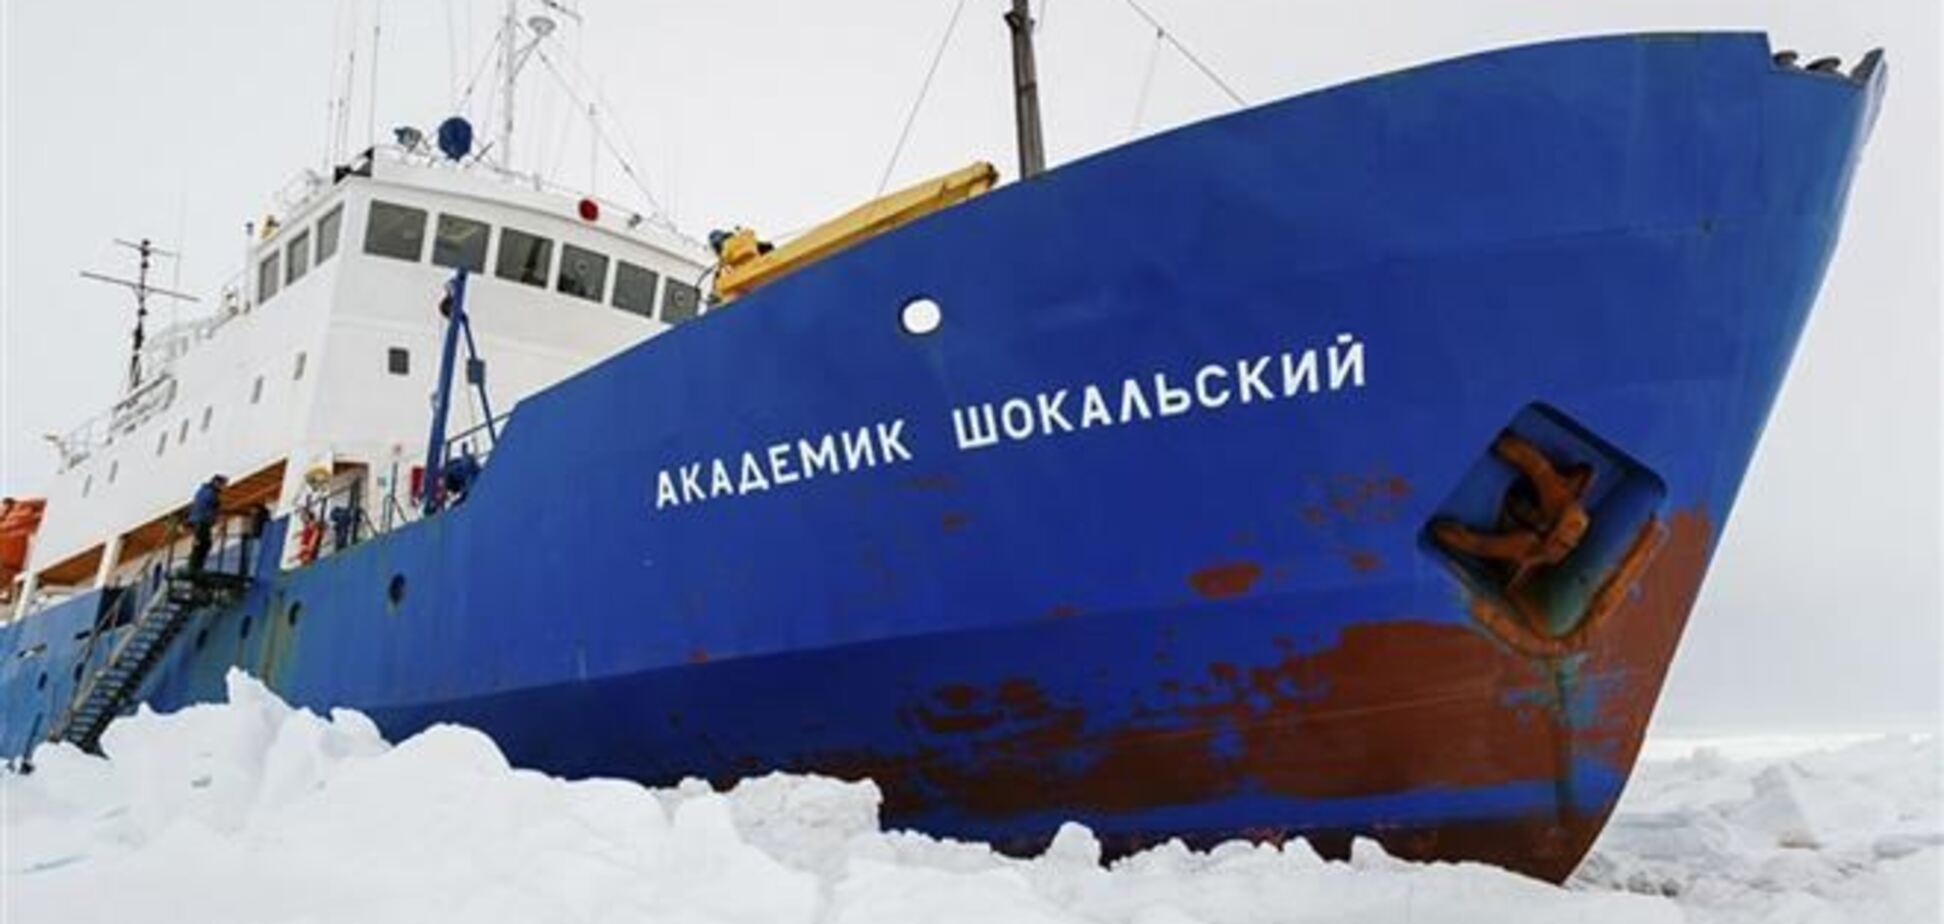 Российское судно 'Академик Шокальский' само освободилось из ледового плена